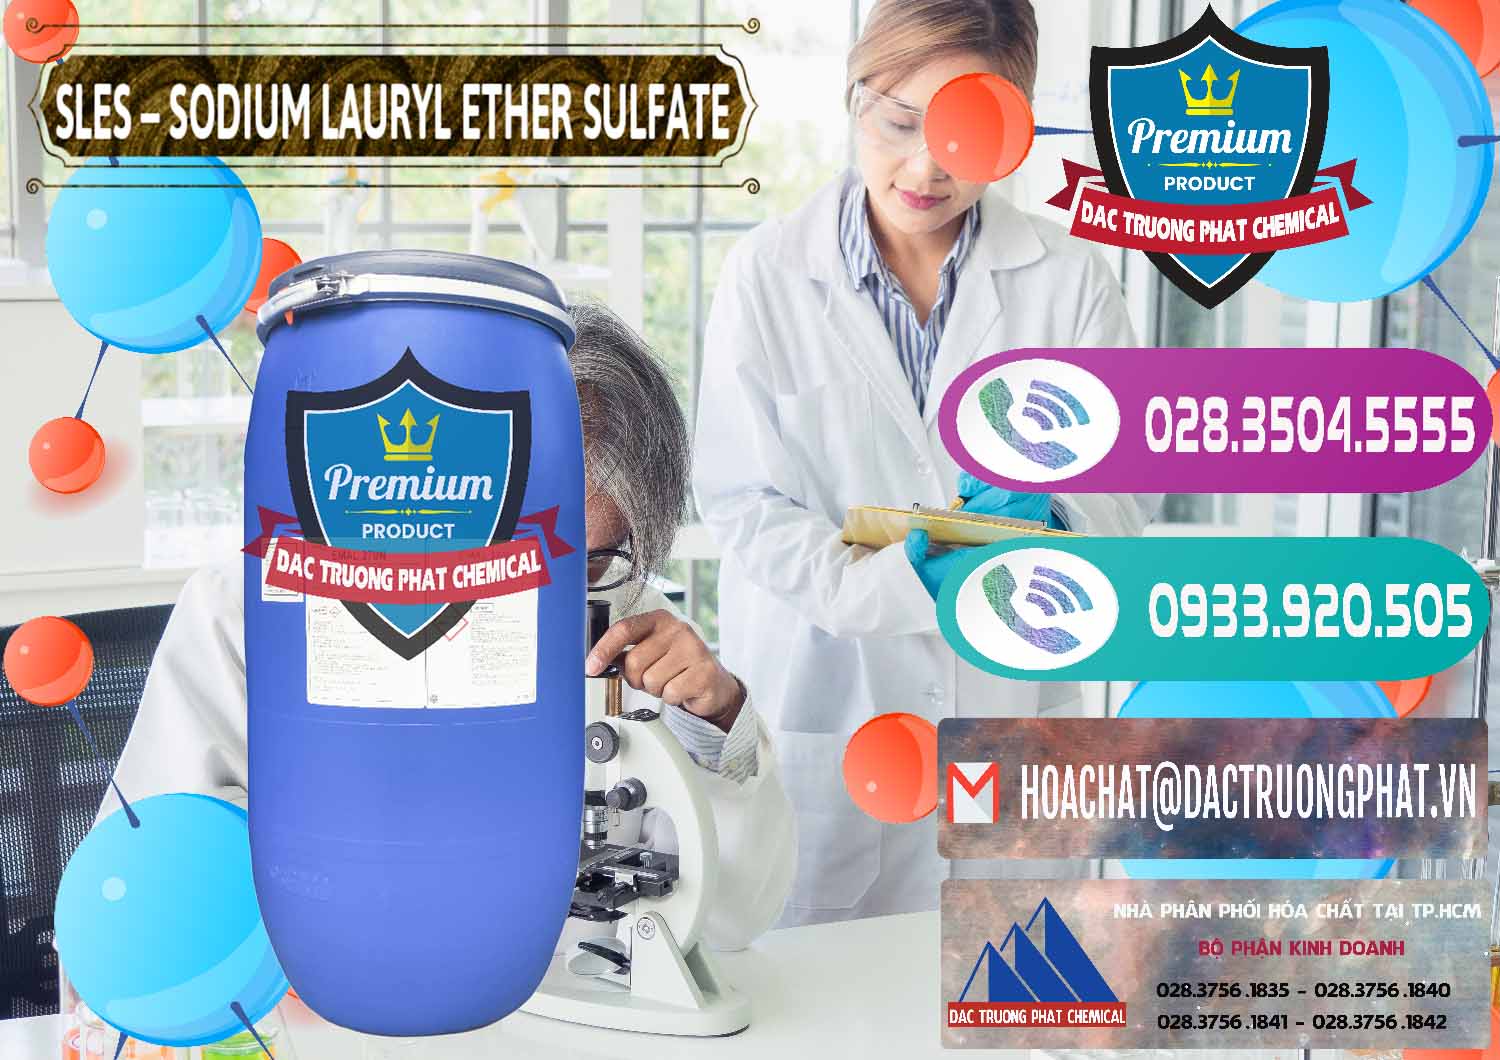 Đơn vị chuyên kinh doanh và bán Chất Tạo Bọt Sles - Sodium Lauryl Ether Sulphate Kao Indonesia - 0046 - Công ty phân phối & cung cấp hóa chất tại TP.HCM - hoachatxulynuoc.com